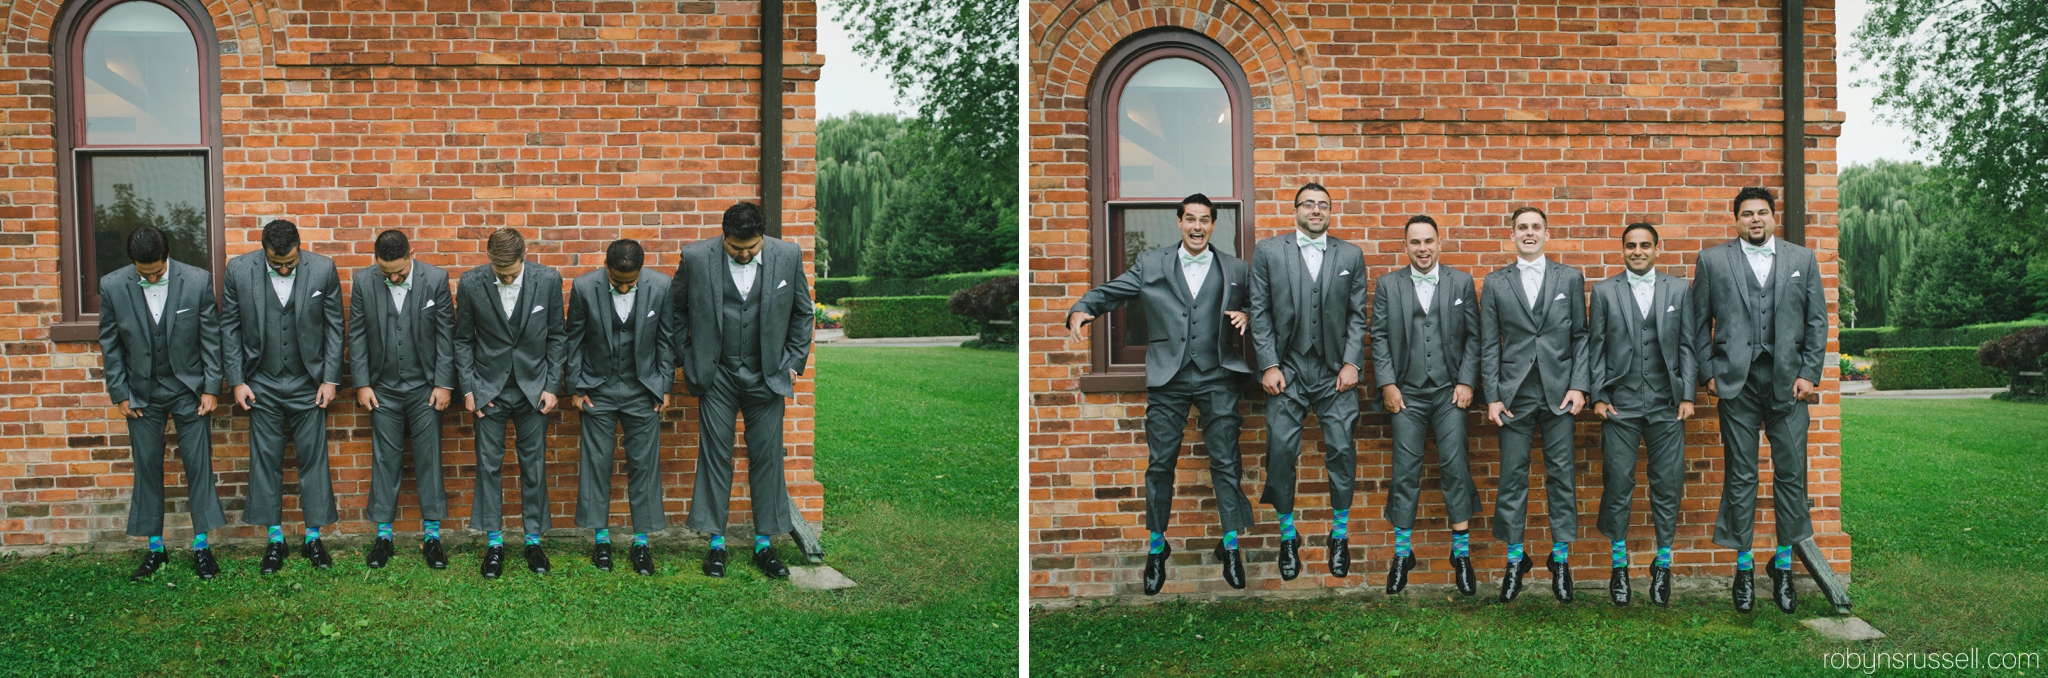 0209-groom-and-groomsmen-fun-socks-jumping-photo.jpg